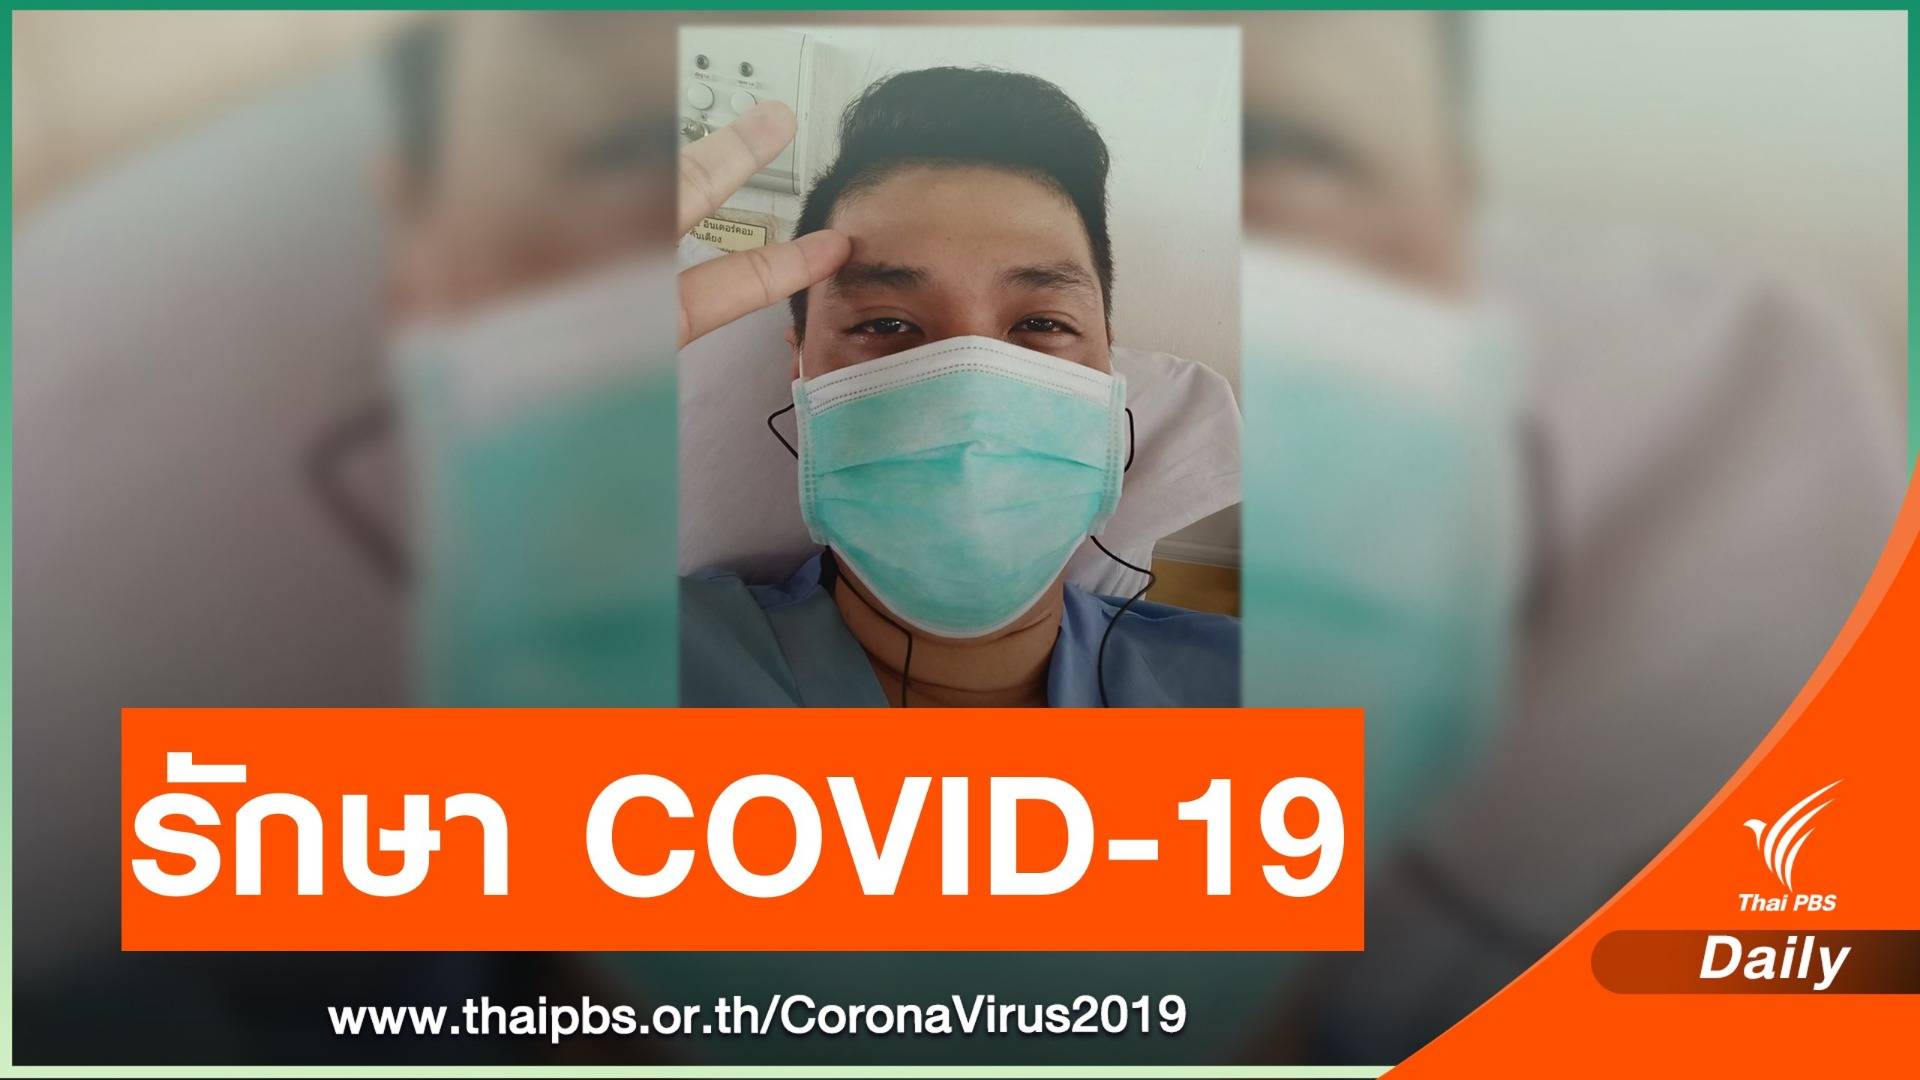 ผู้ป่วยเล่าประสบการณ์ 8 วันในโรงพยาบาลรักษา  COVID-19 